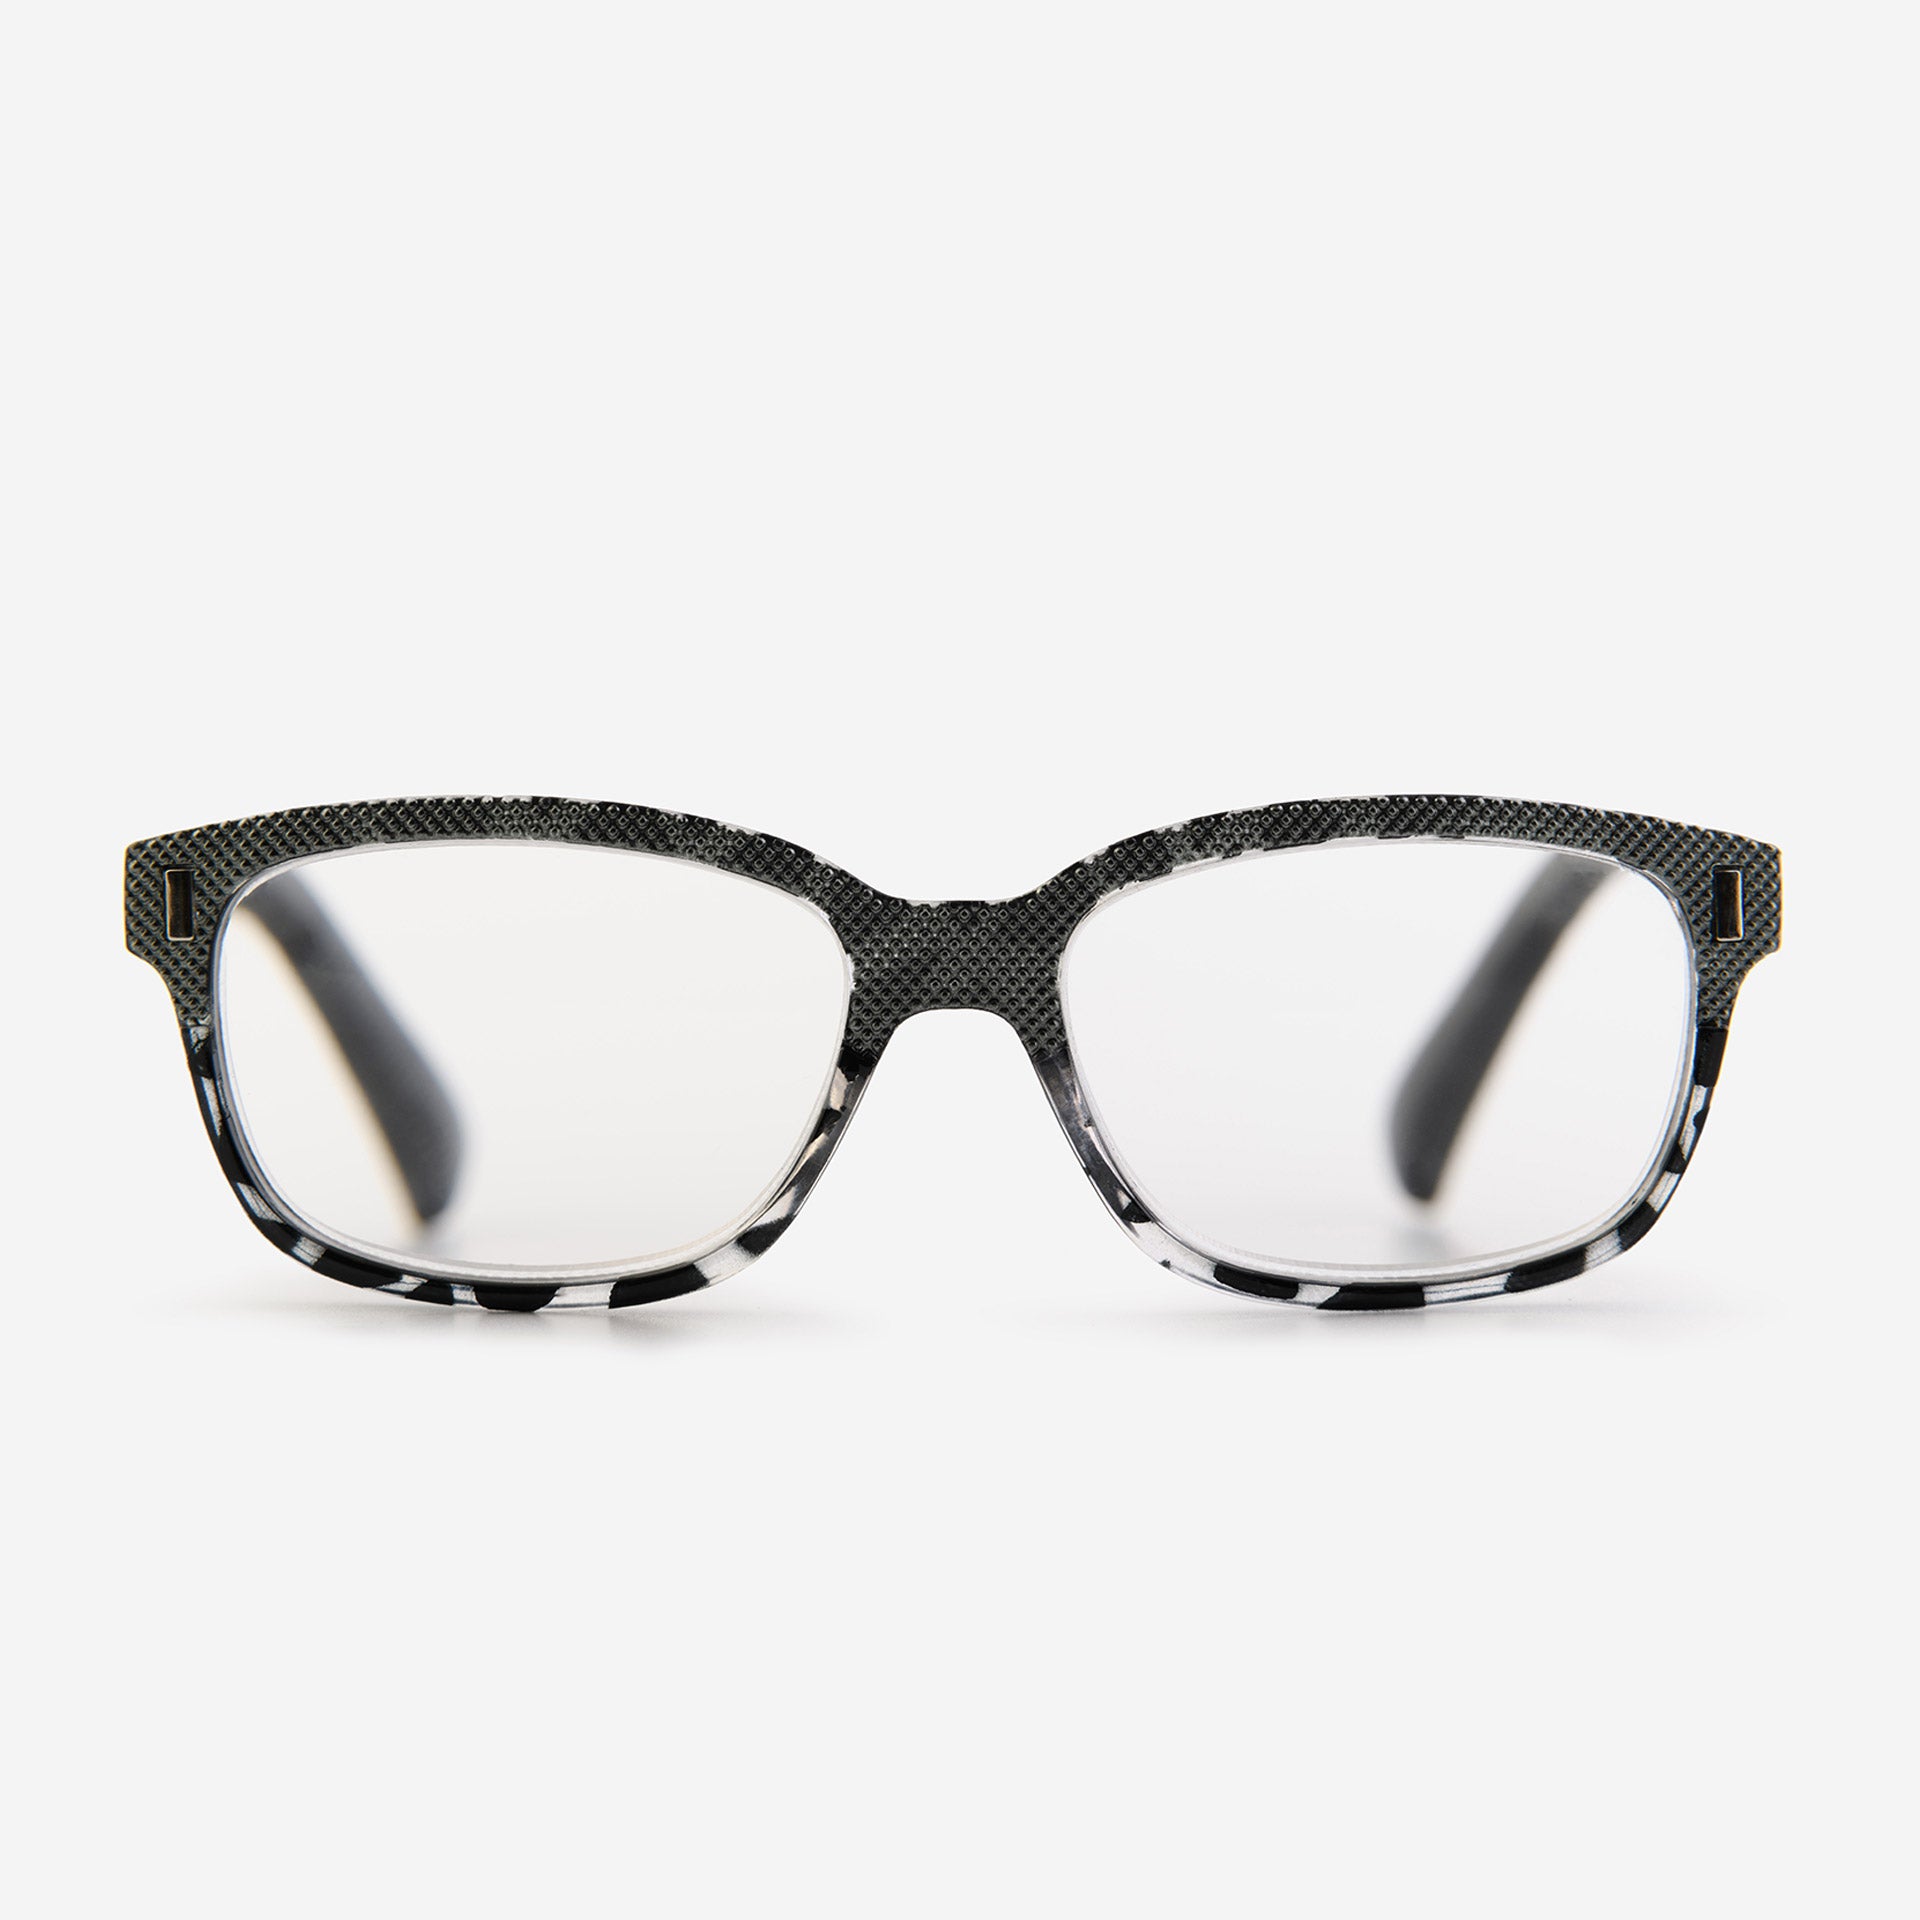 Wayfarer reading glasses black tortoiseshell pattern